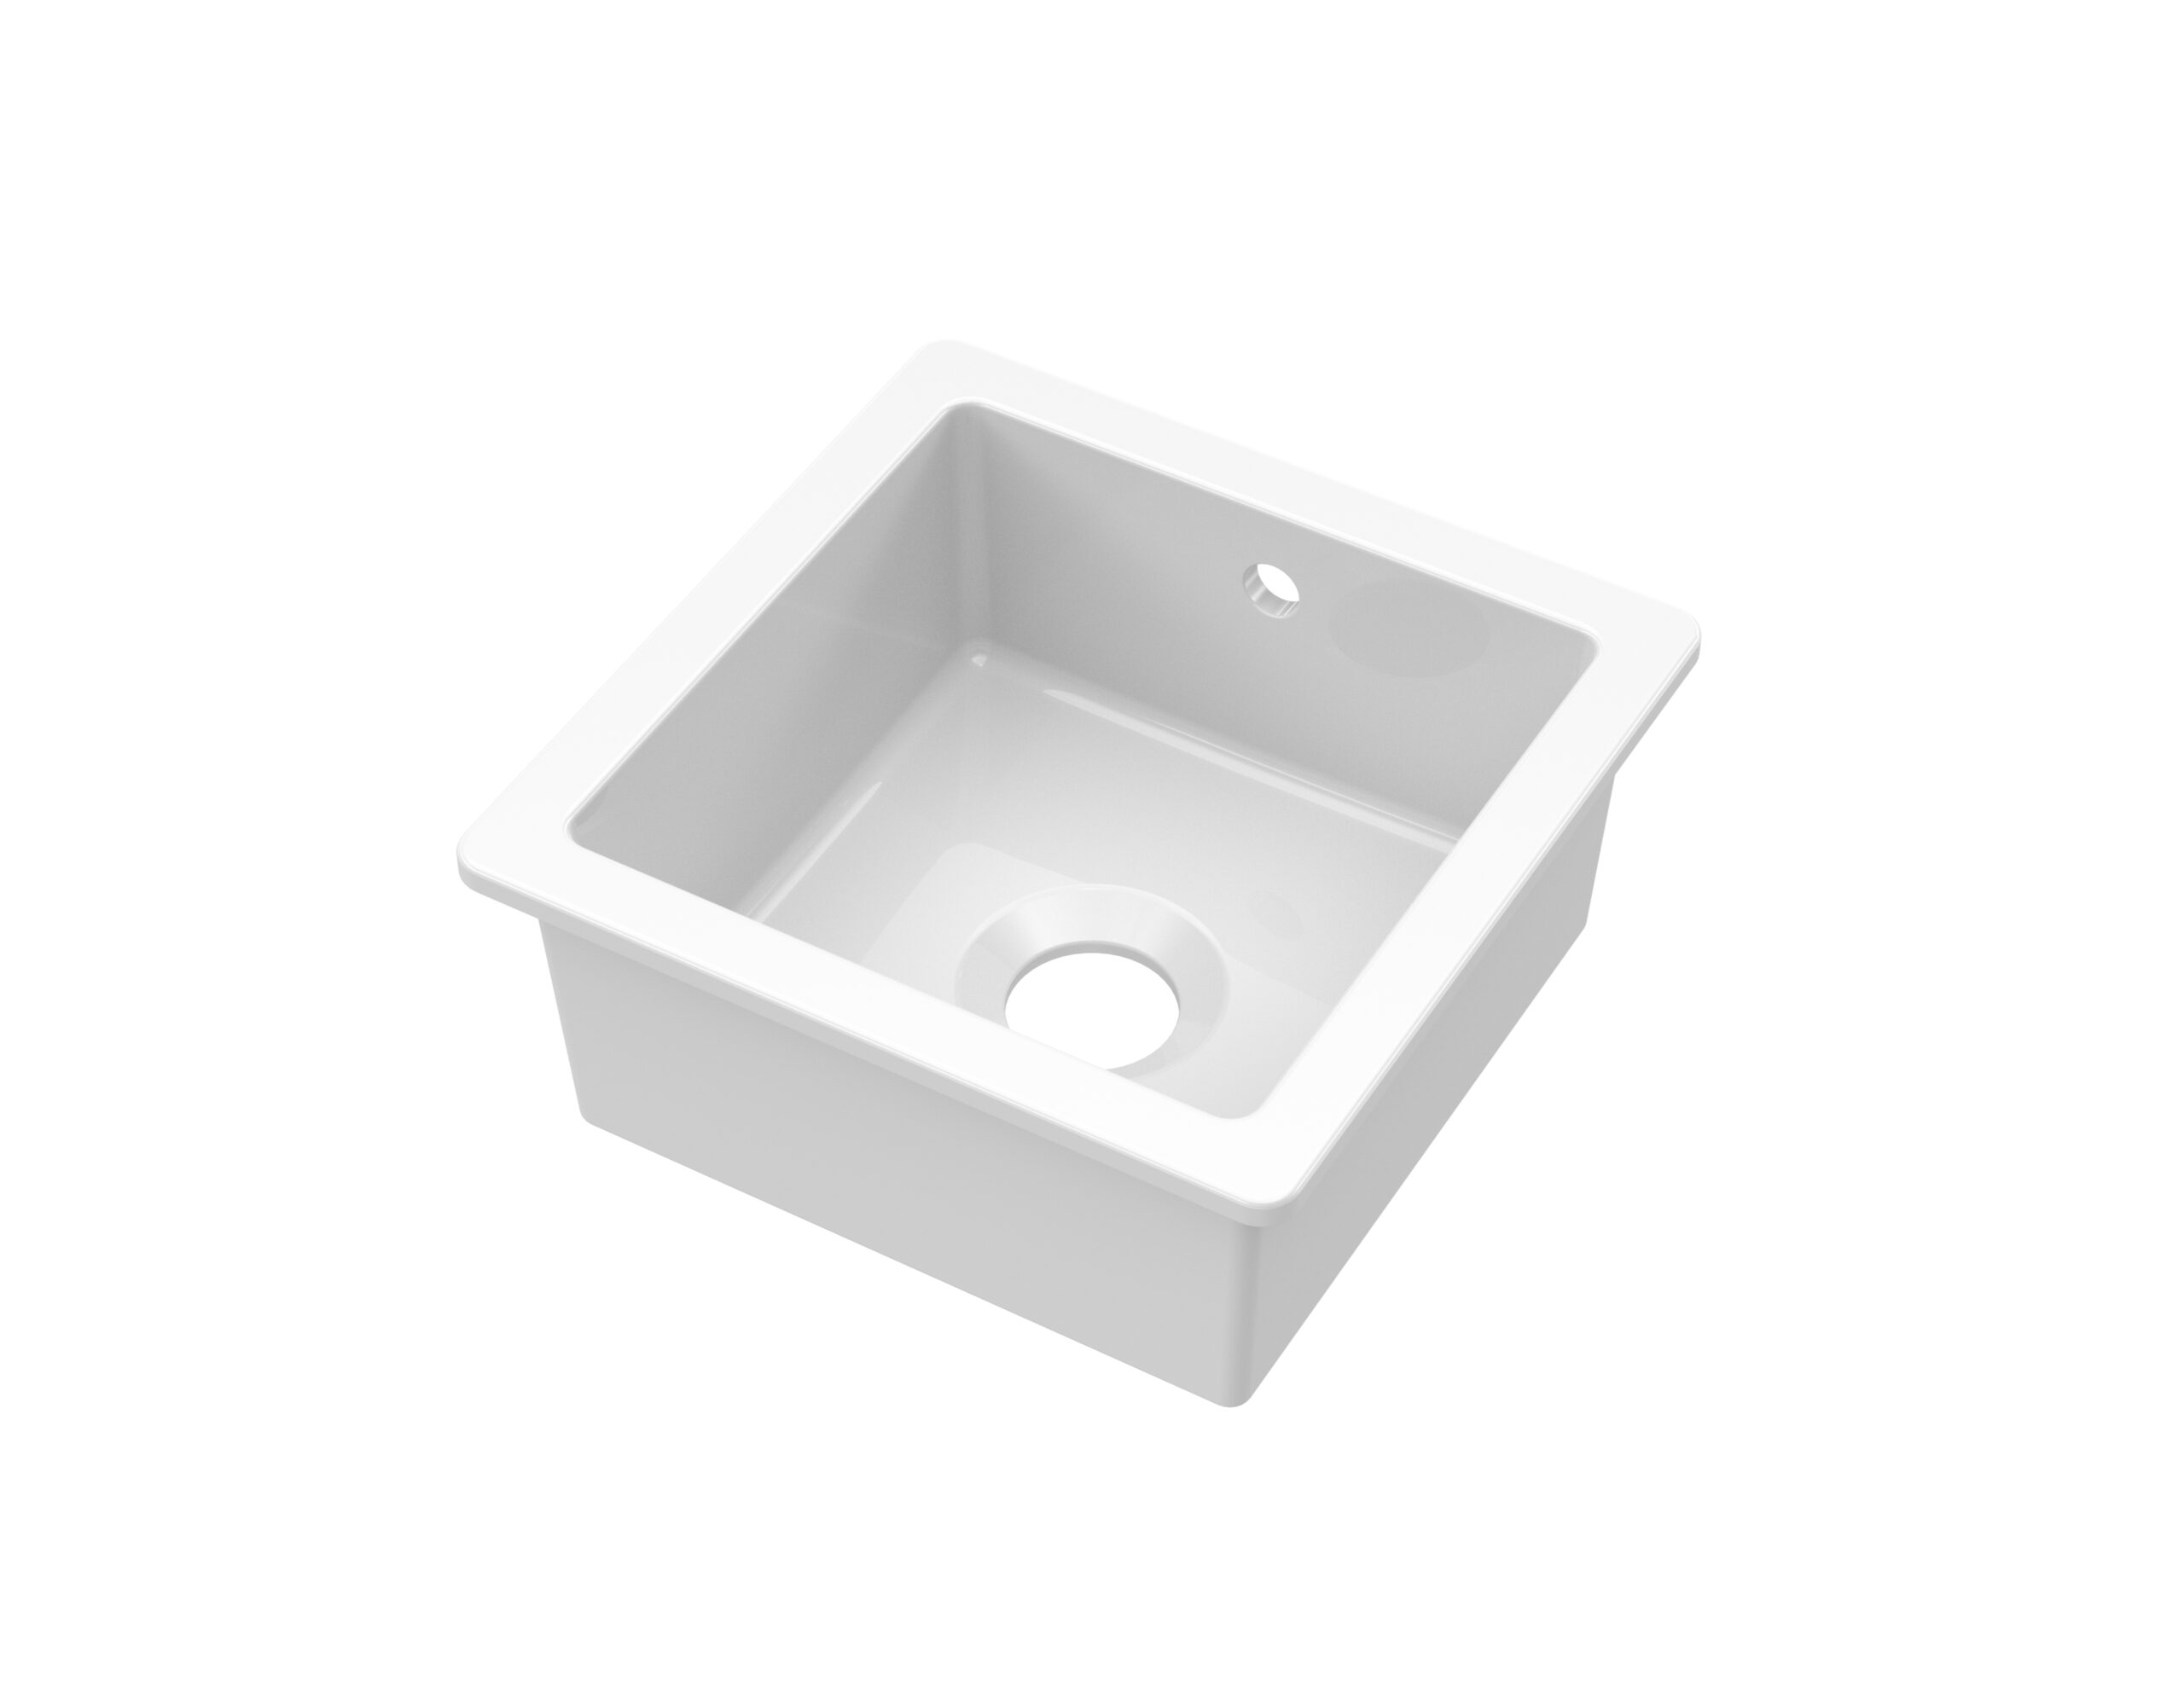 Inset or undermount Ceramic Sink – Regis